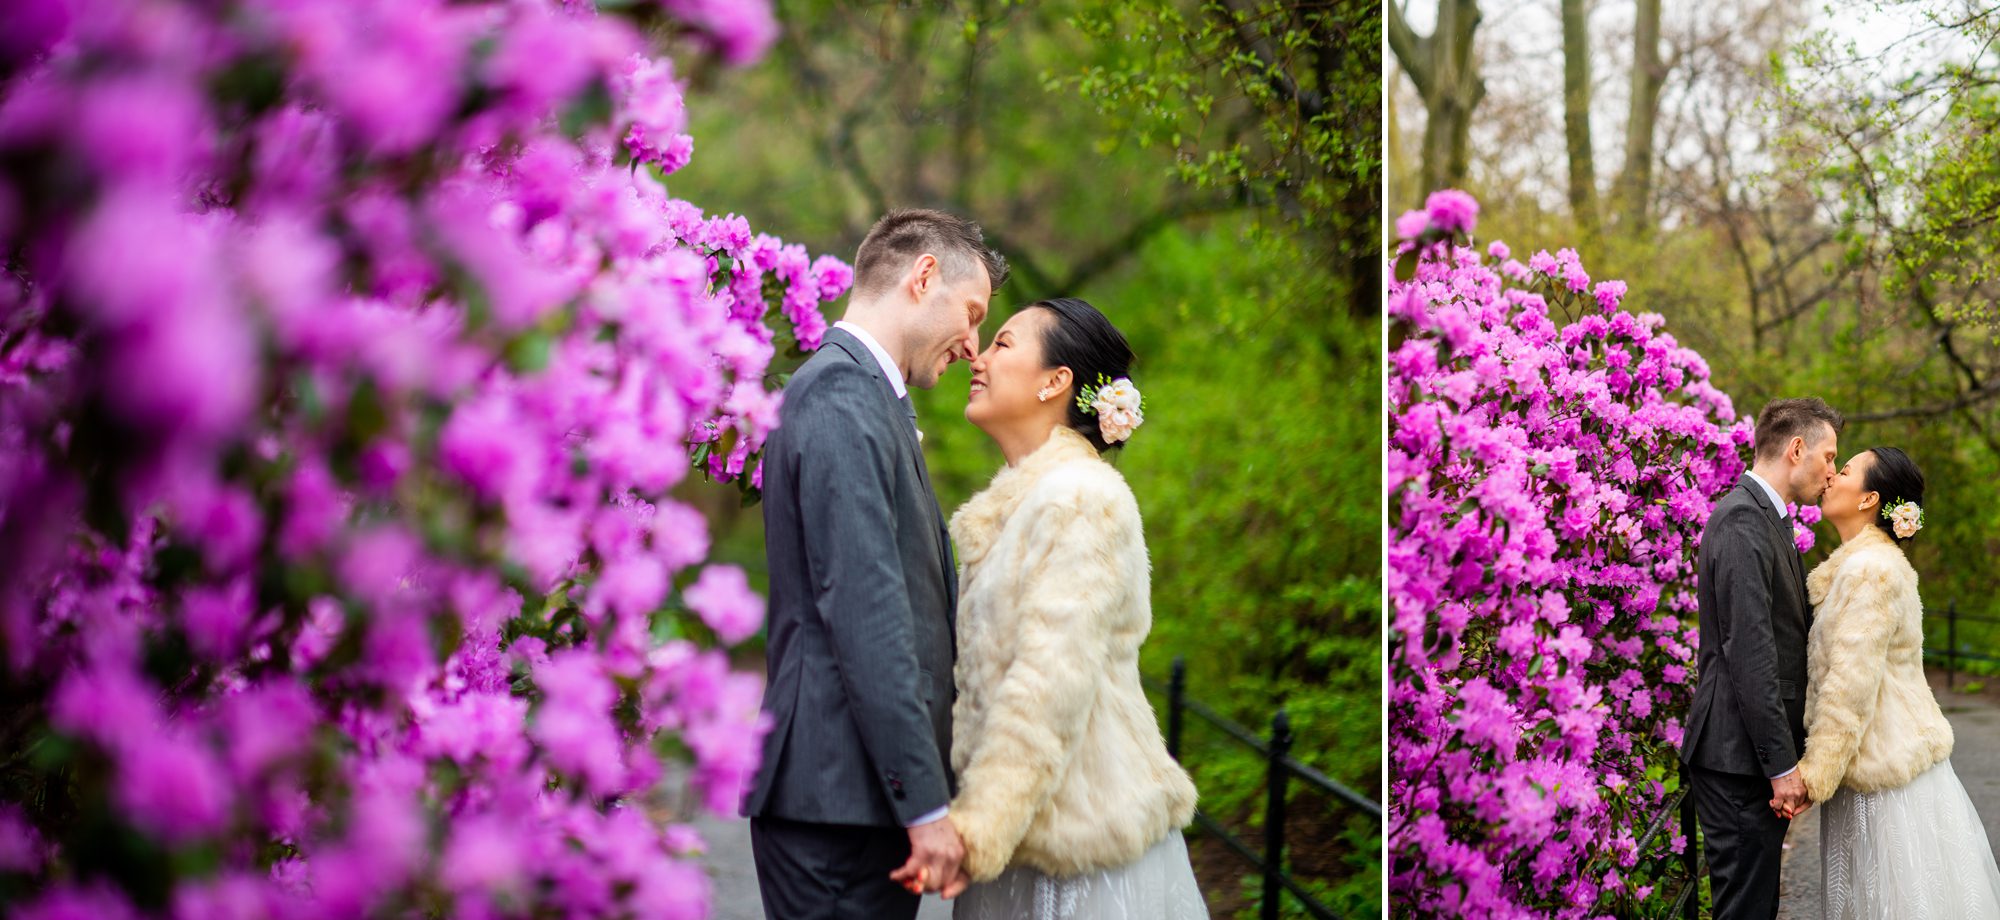 Central Park Wedding Photos 